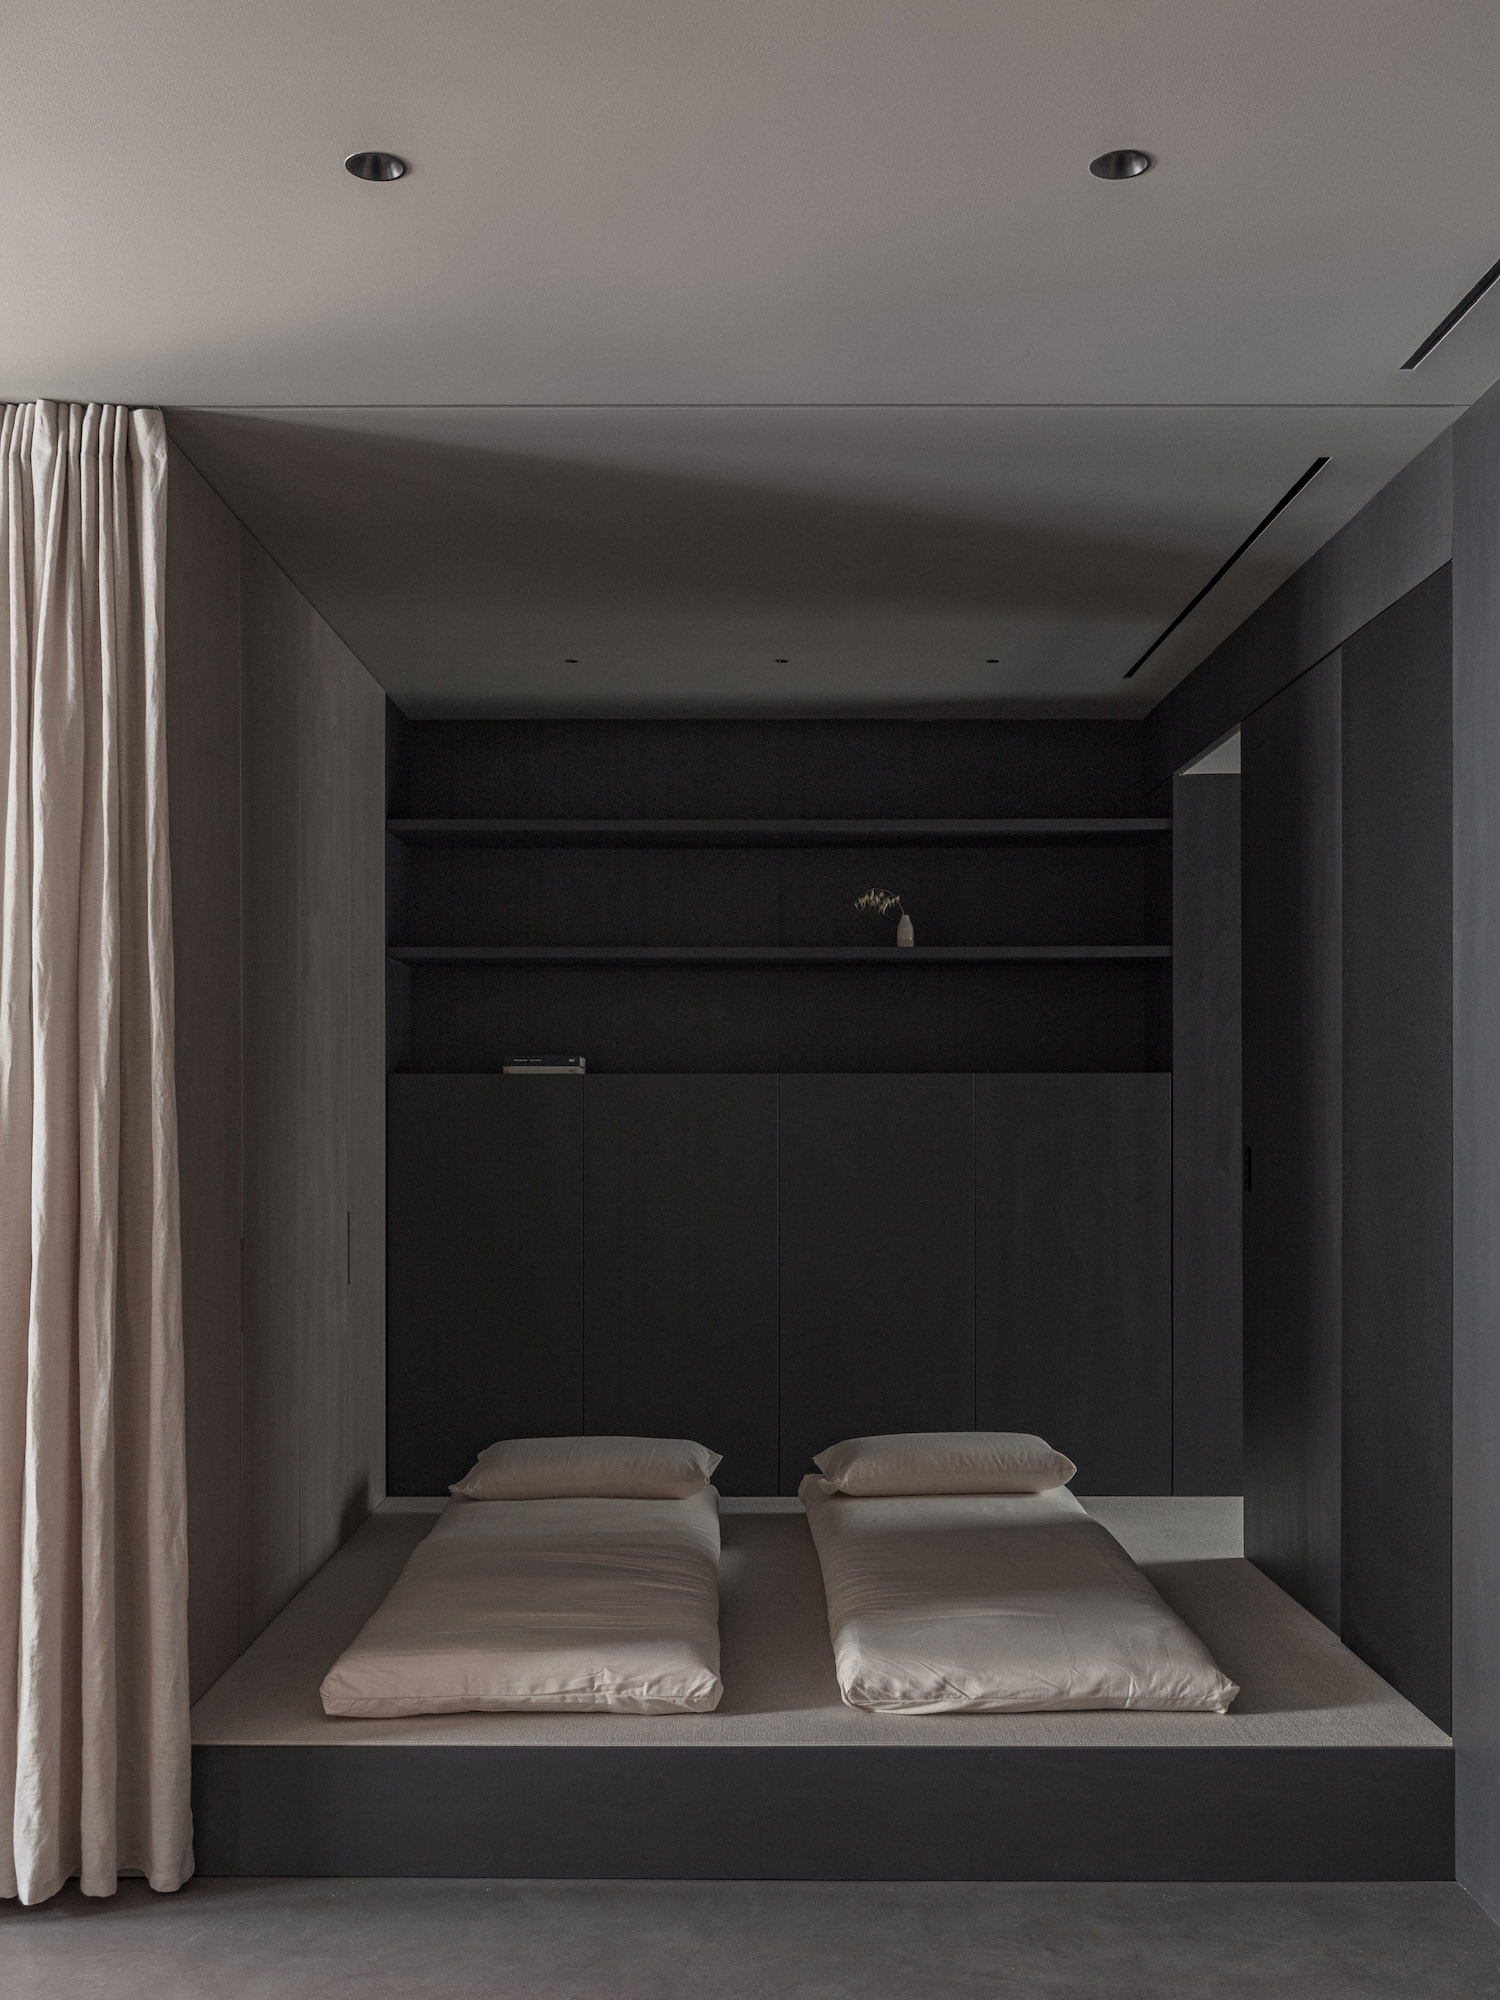 Francesc Rifé Studio,西班牙,巴伦西亚,公寓设计案例,极简风格,公寓设计,极简主义